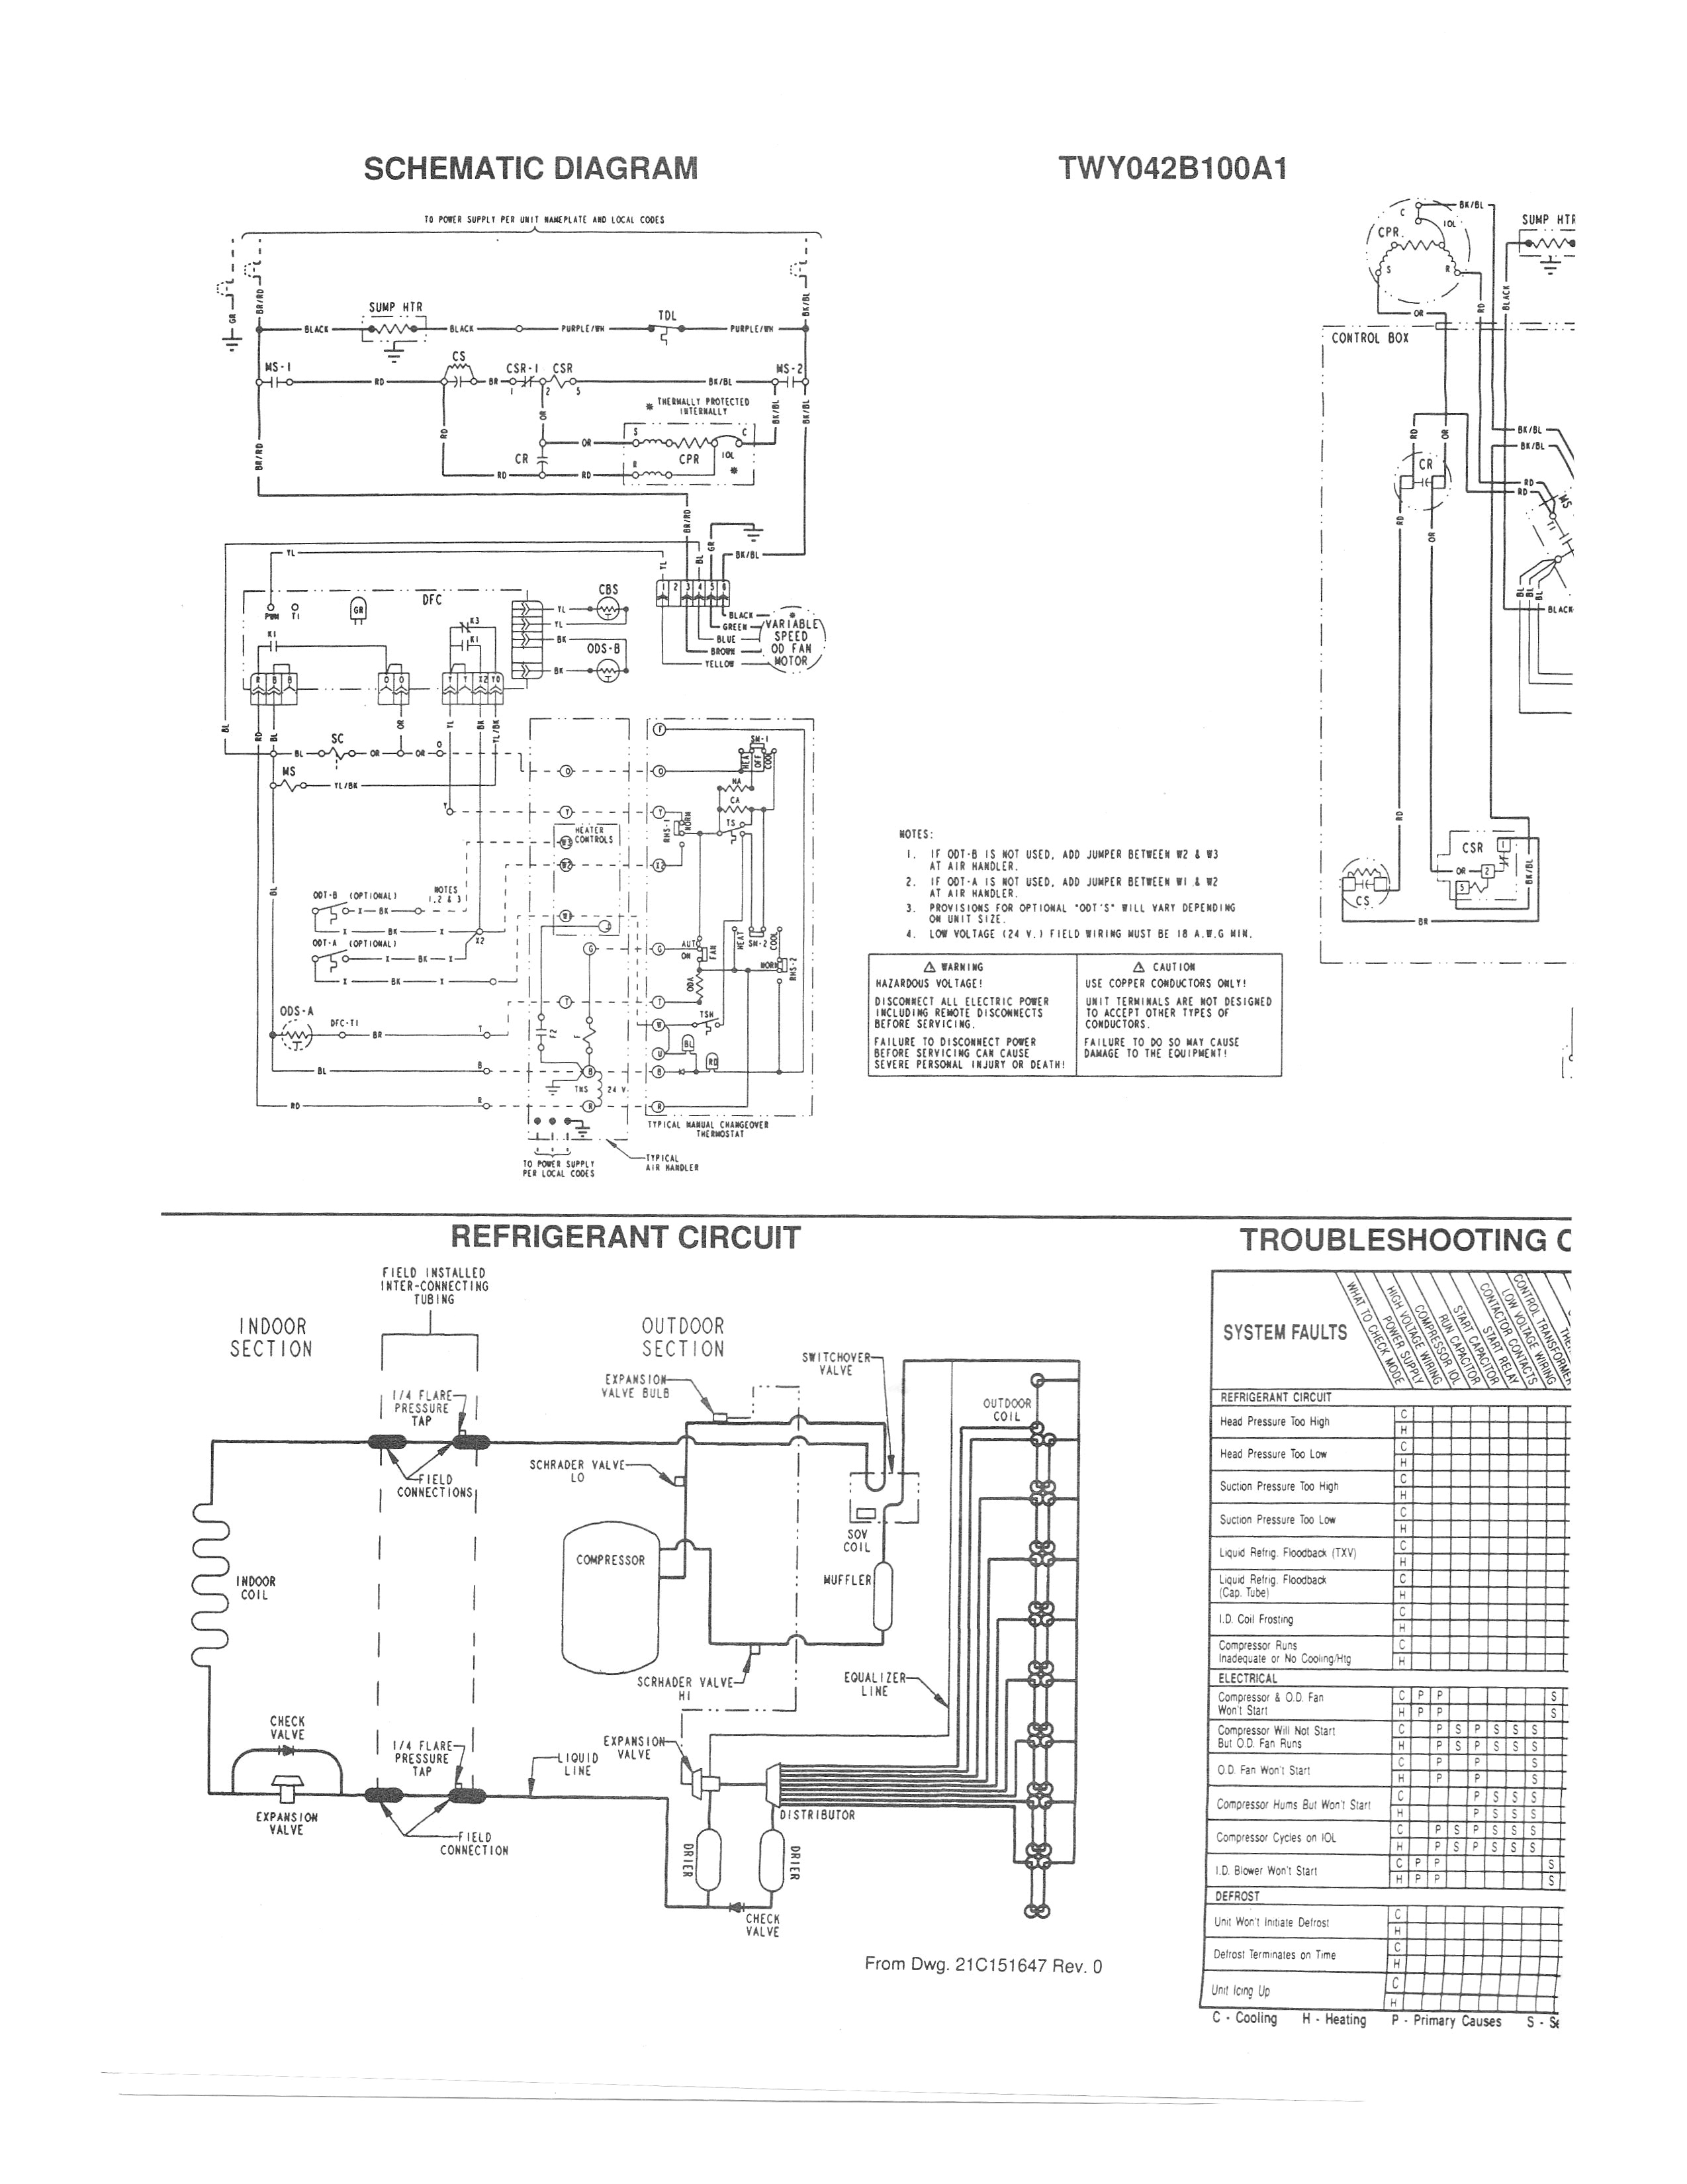 trane xr15 wiring diagram wiring diagram worldtrane xr13 wiring diagram wiring diagram compilation trane xr15 installation